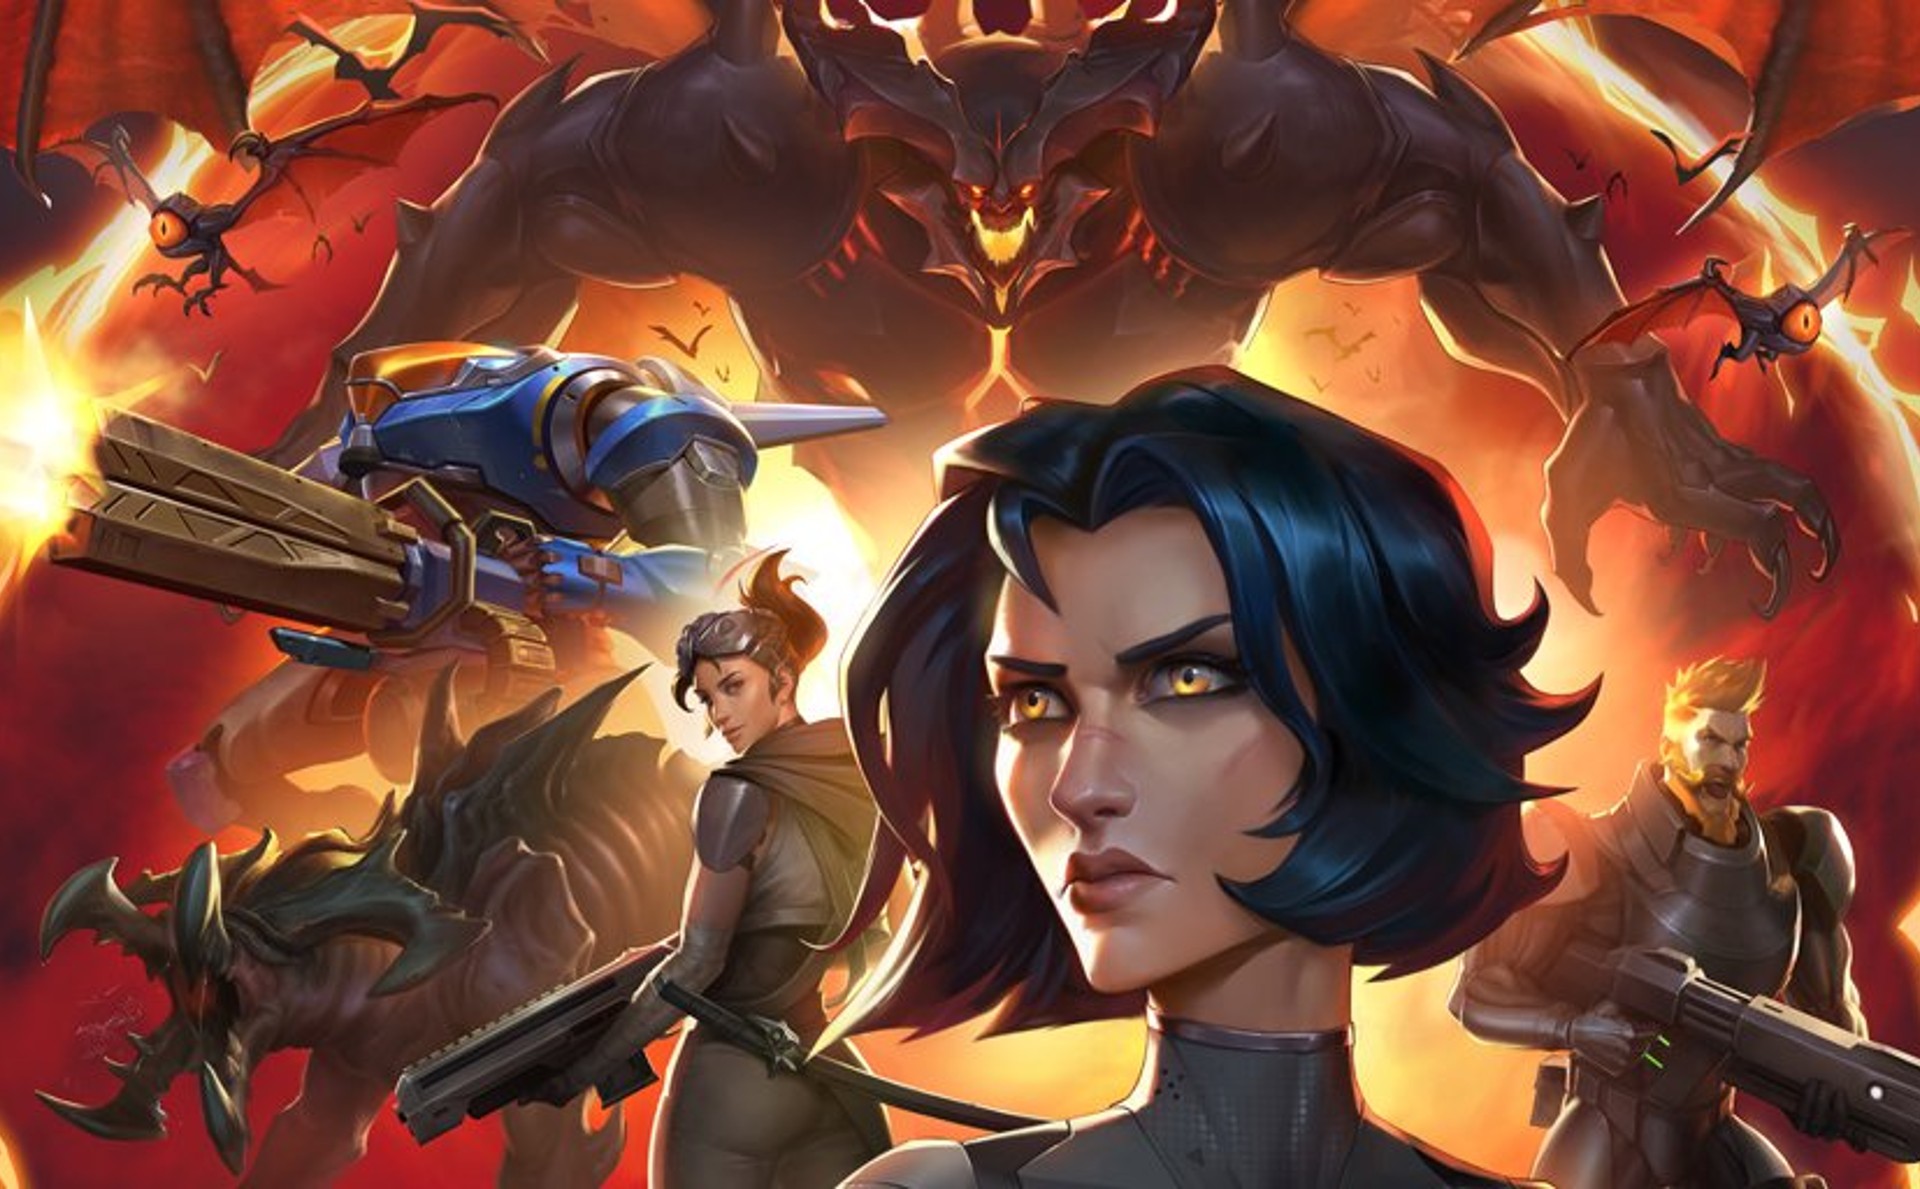 อดีตทีมงาน Blizzard เปิดตัว Stormgate เกมแนววางแผน RTS ในโลกอนาคตที่ล่มสลาย